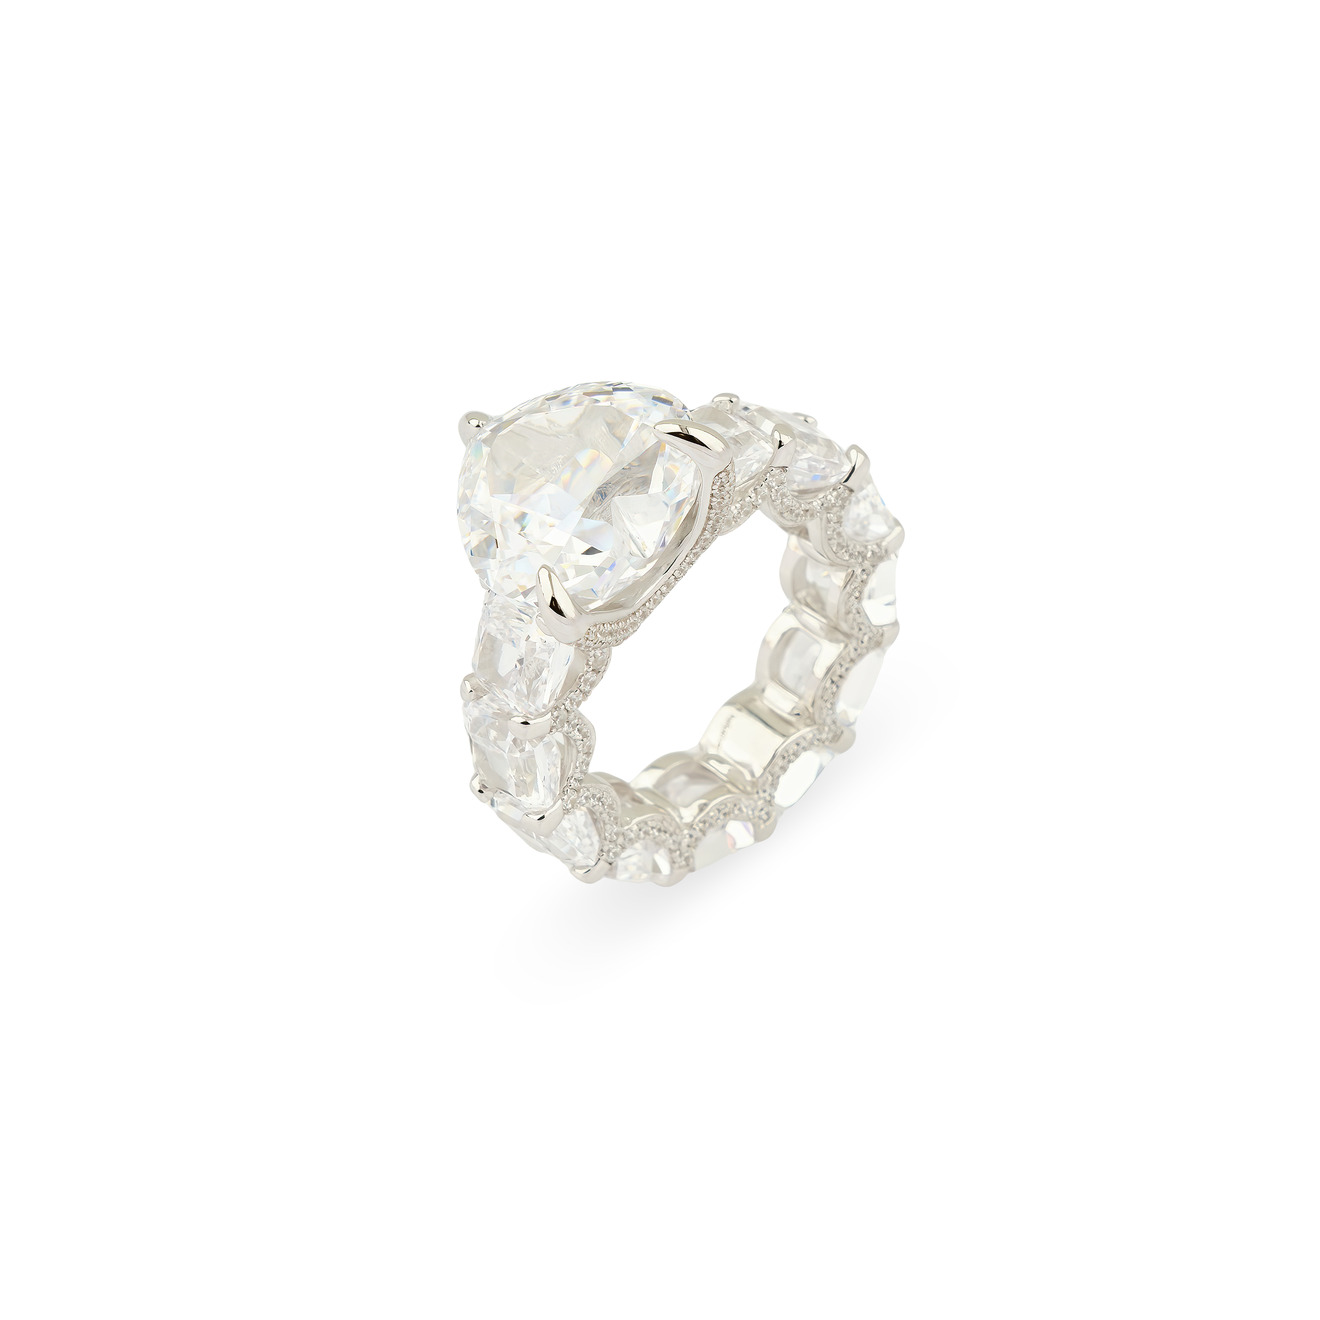 Holy Silver Кольцо из серебра с дорожкой из белых кристаллов и крупным белым кристаллом сердце фото